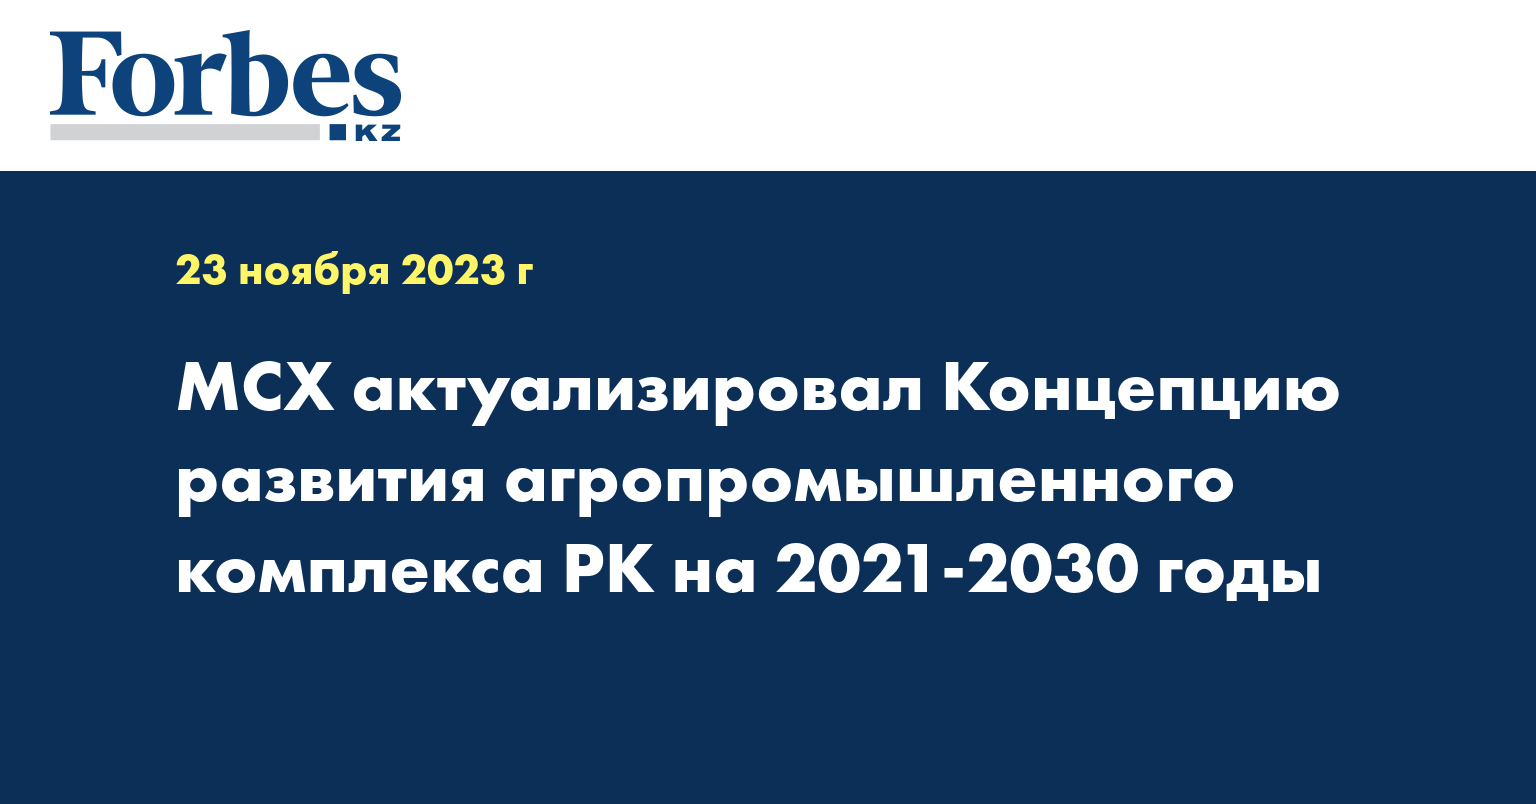 МСХ актуализировал Концепцию развития агропромышленного комплекса РК на 2021-2030 годы